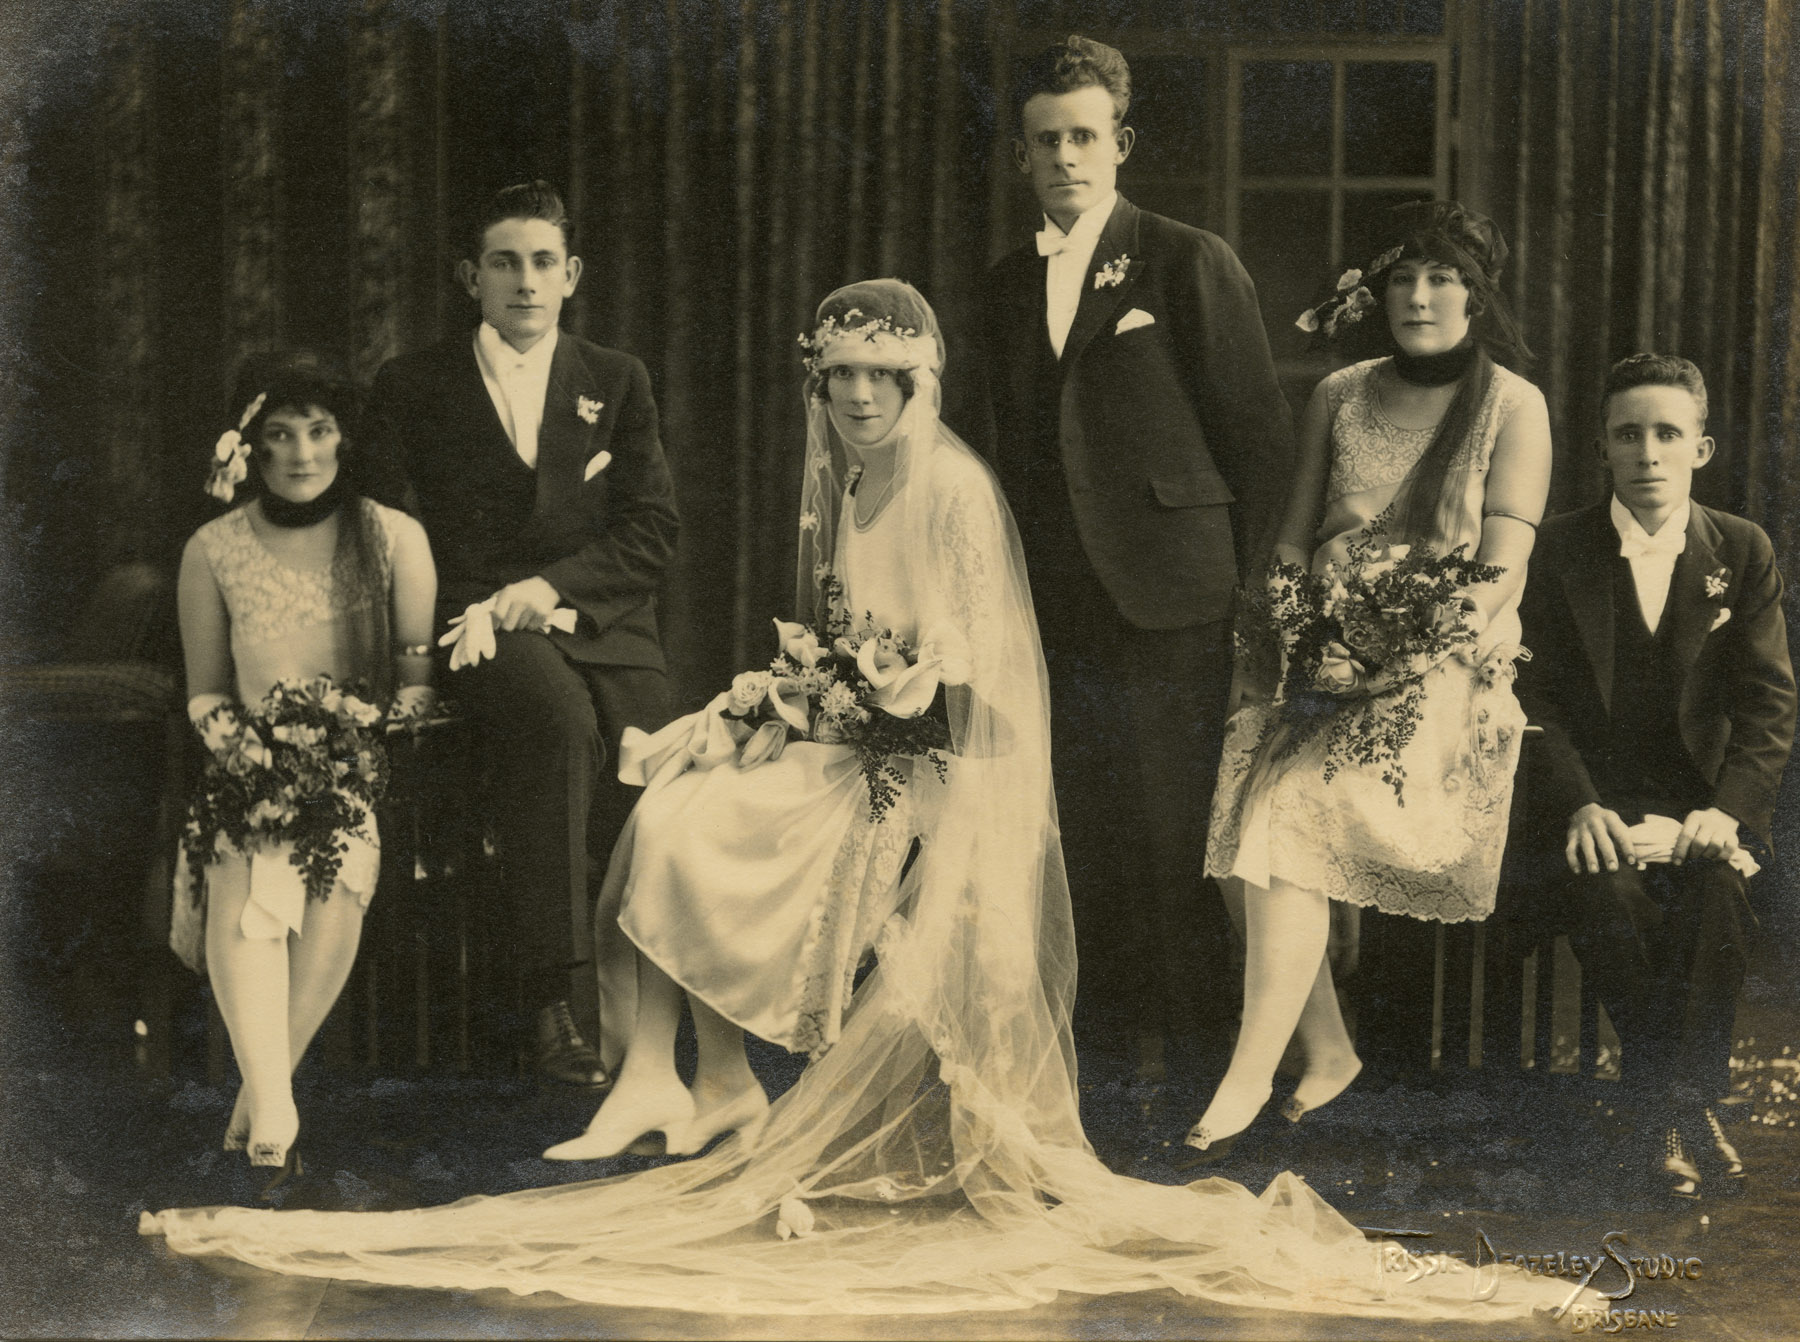 Trissie Deazeley Studio (active c. 1924 - c. 1928) 'Wedding party' c. 1925